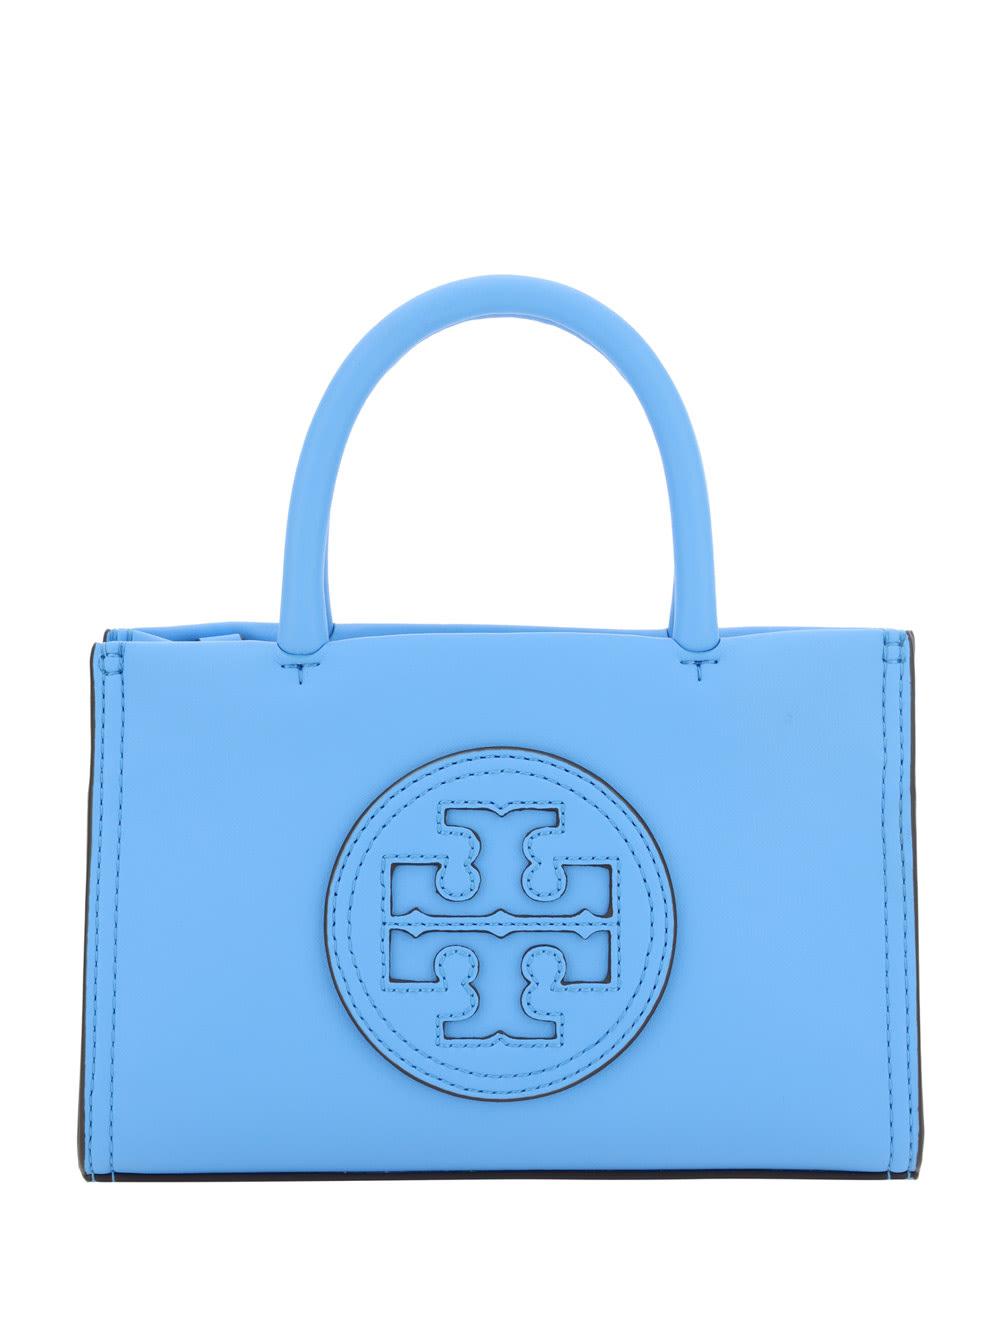 Tory Burch Ella Mini Faux-leather Tote Bag in Blue